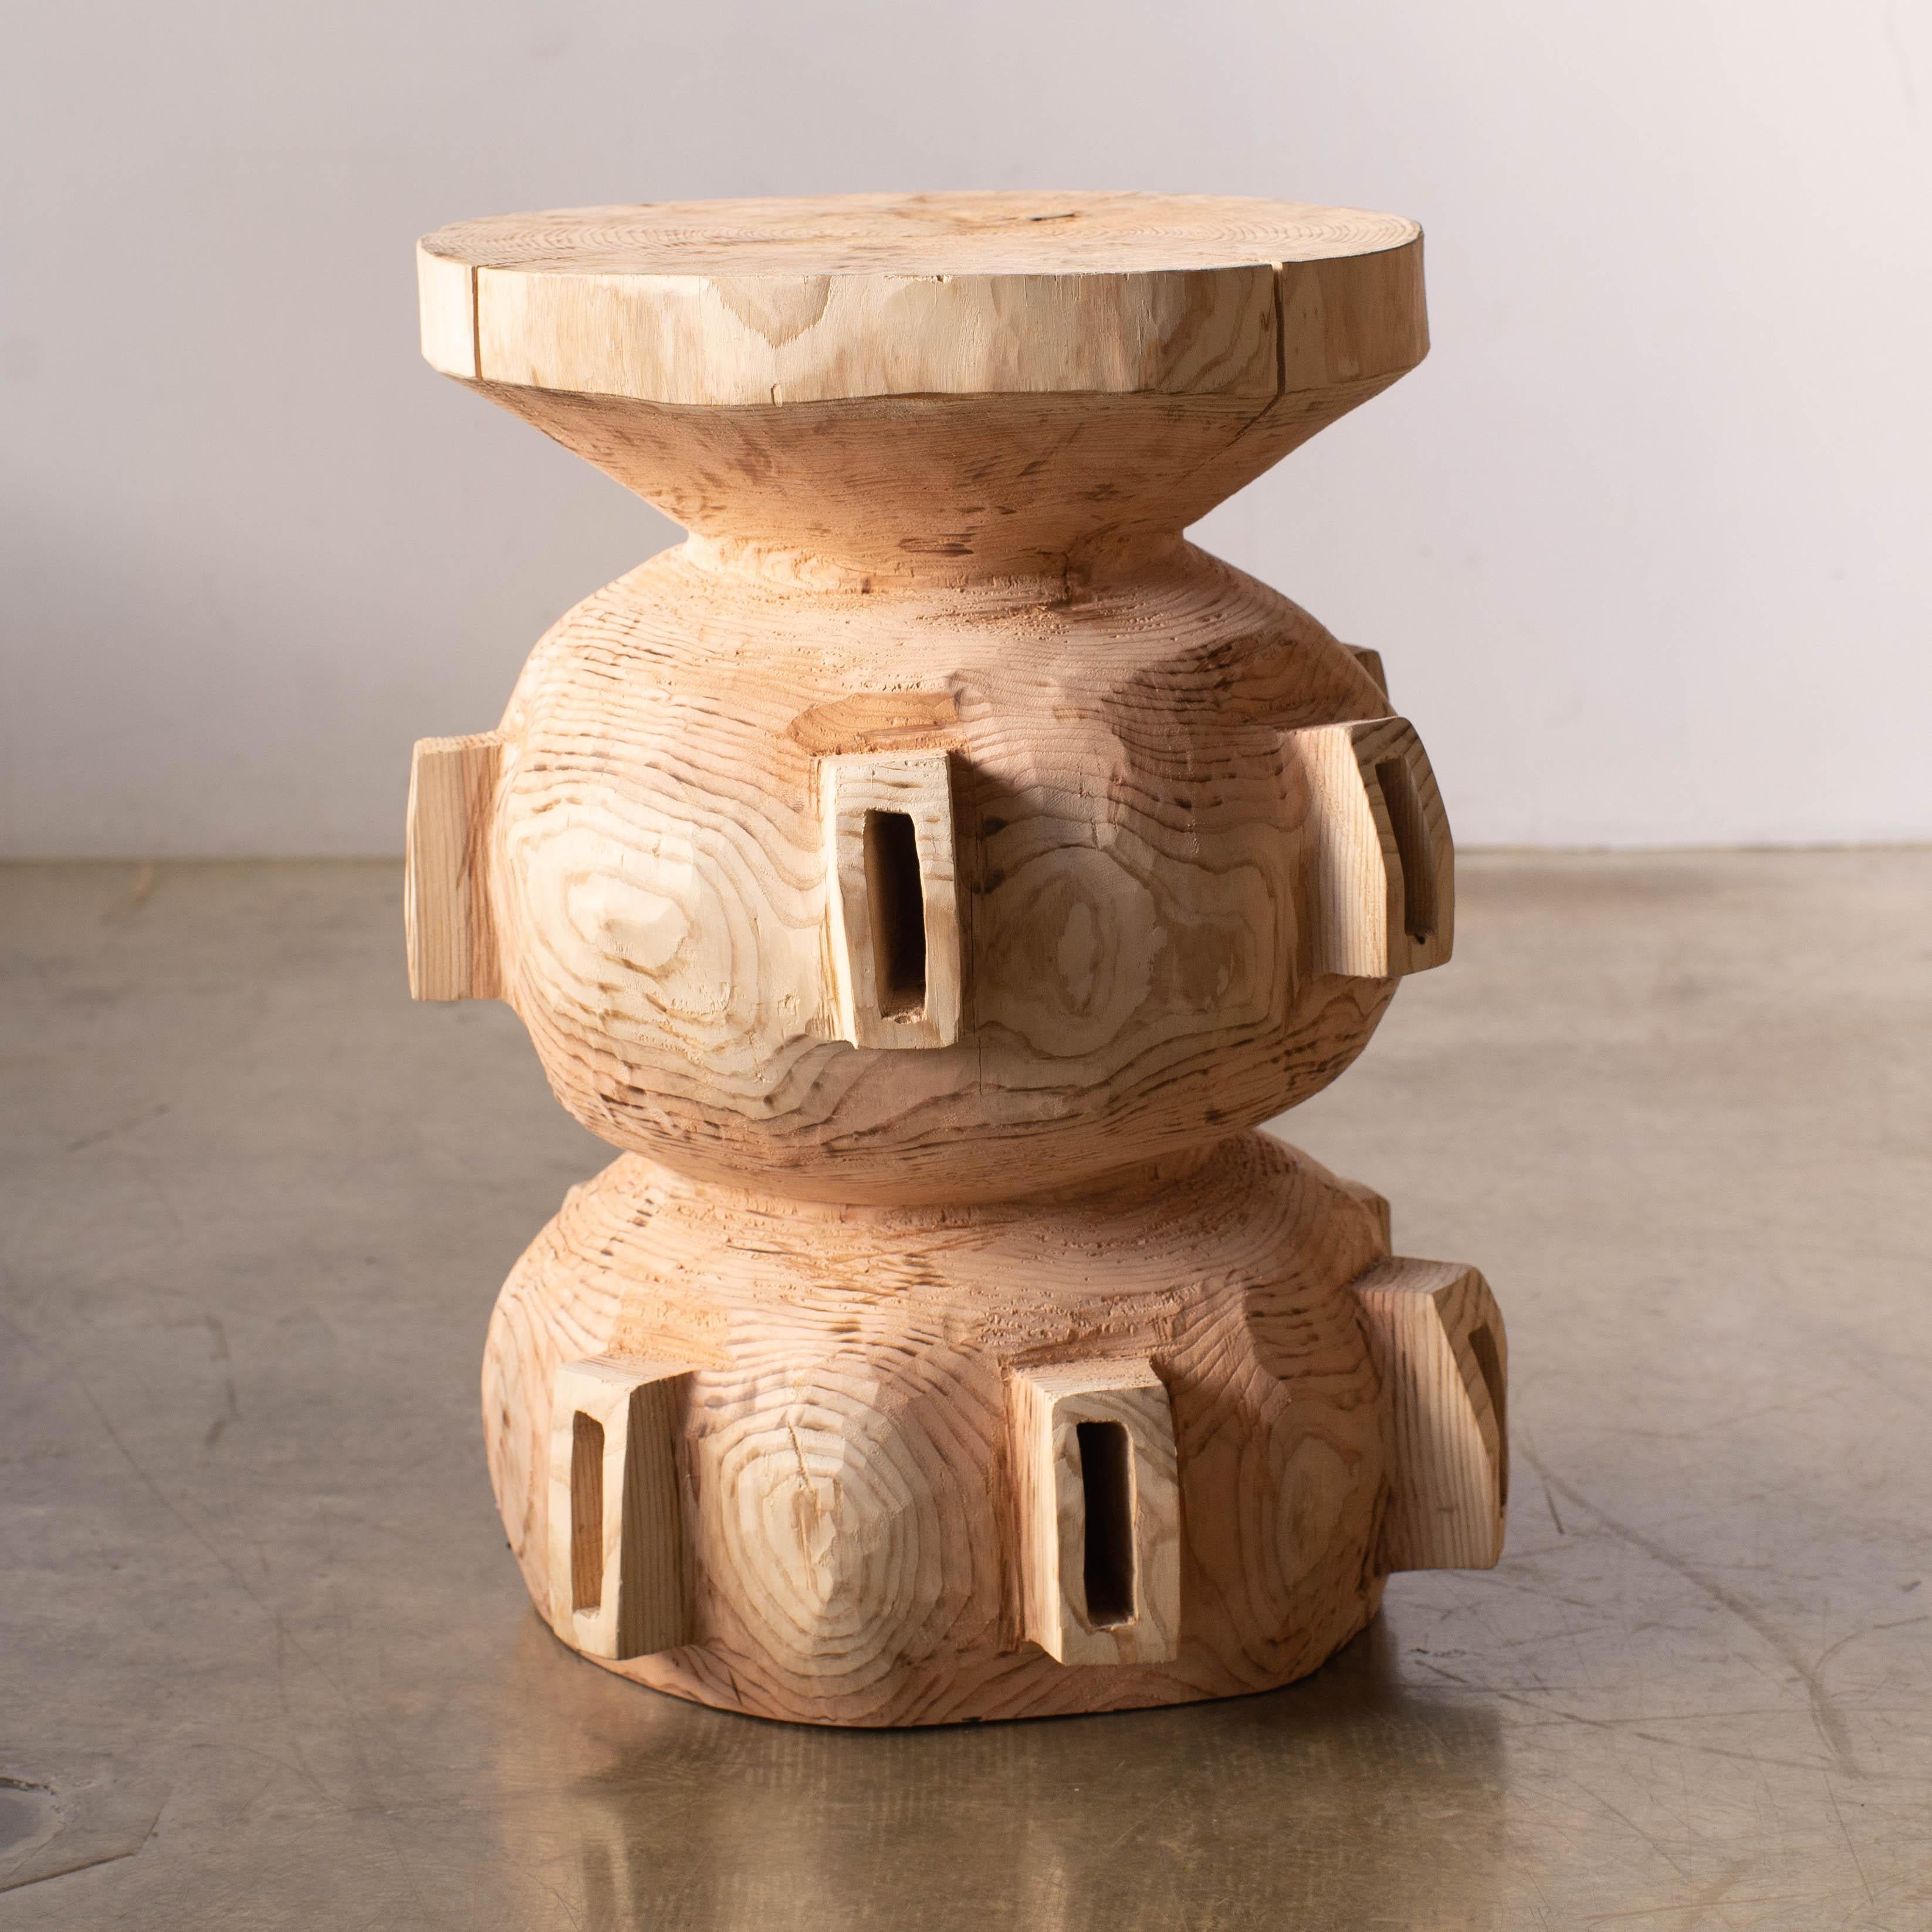 Nom : Vaisseau spatial mam
Tabouret sculptural de Hiroyuki Nishimura et meubles sculptés en zone
MATERIAL : Cèdre
Cette œuvre est sculptée dans du bois à l'aide de plusieurs types de tronçonneuses.
La plupart des bois utilisés pour les œuvres de